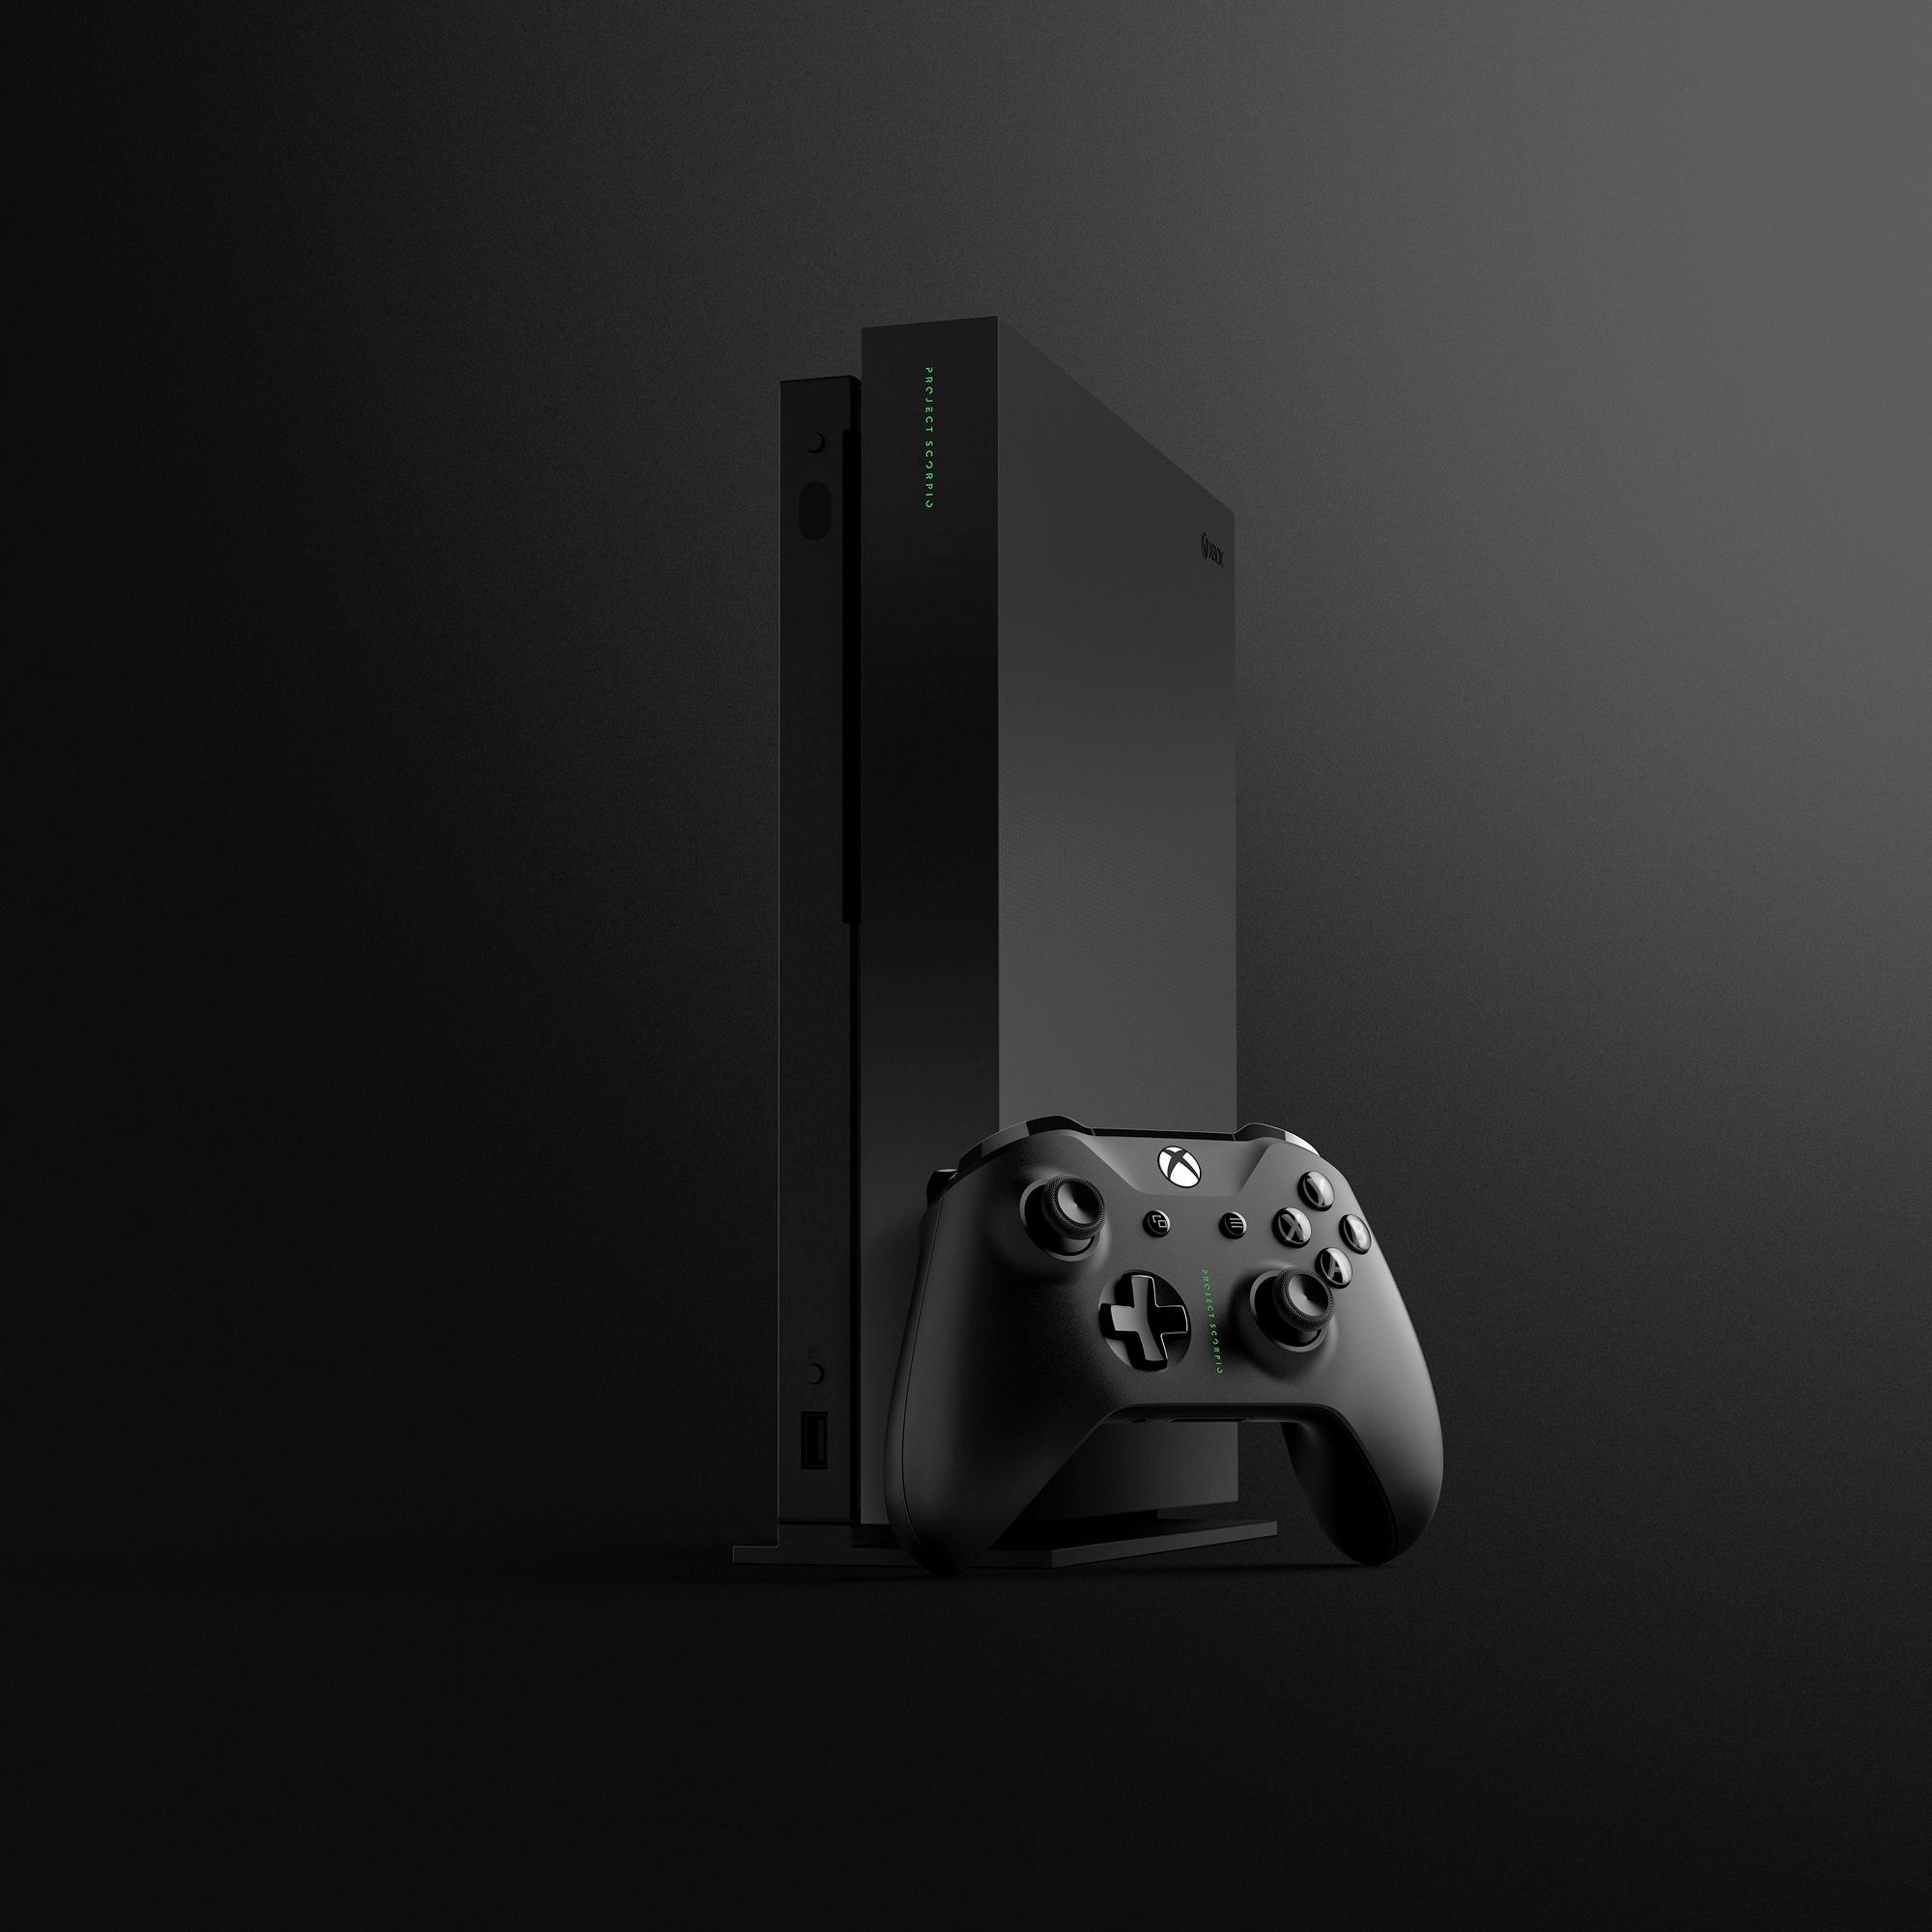 Console - Microsoft Xbox One X - Project Scorpio Edition - 1 TB (Boxed)  11750949